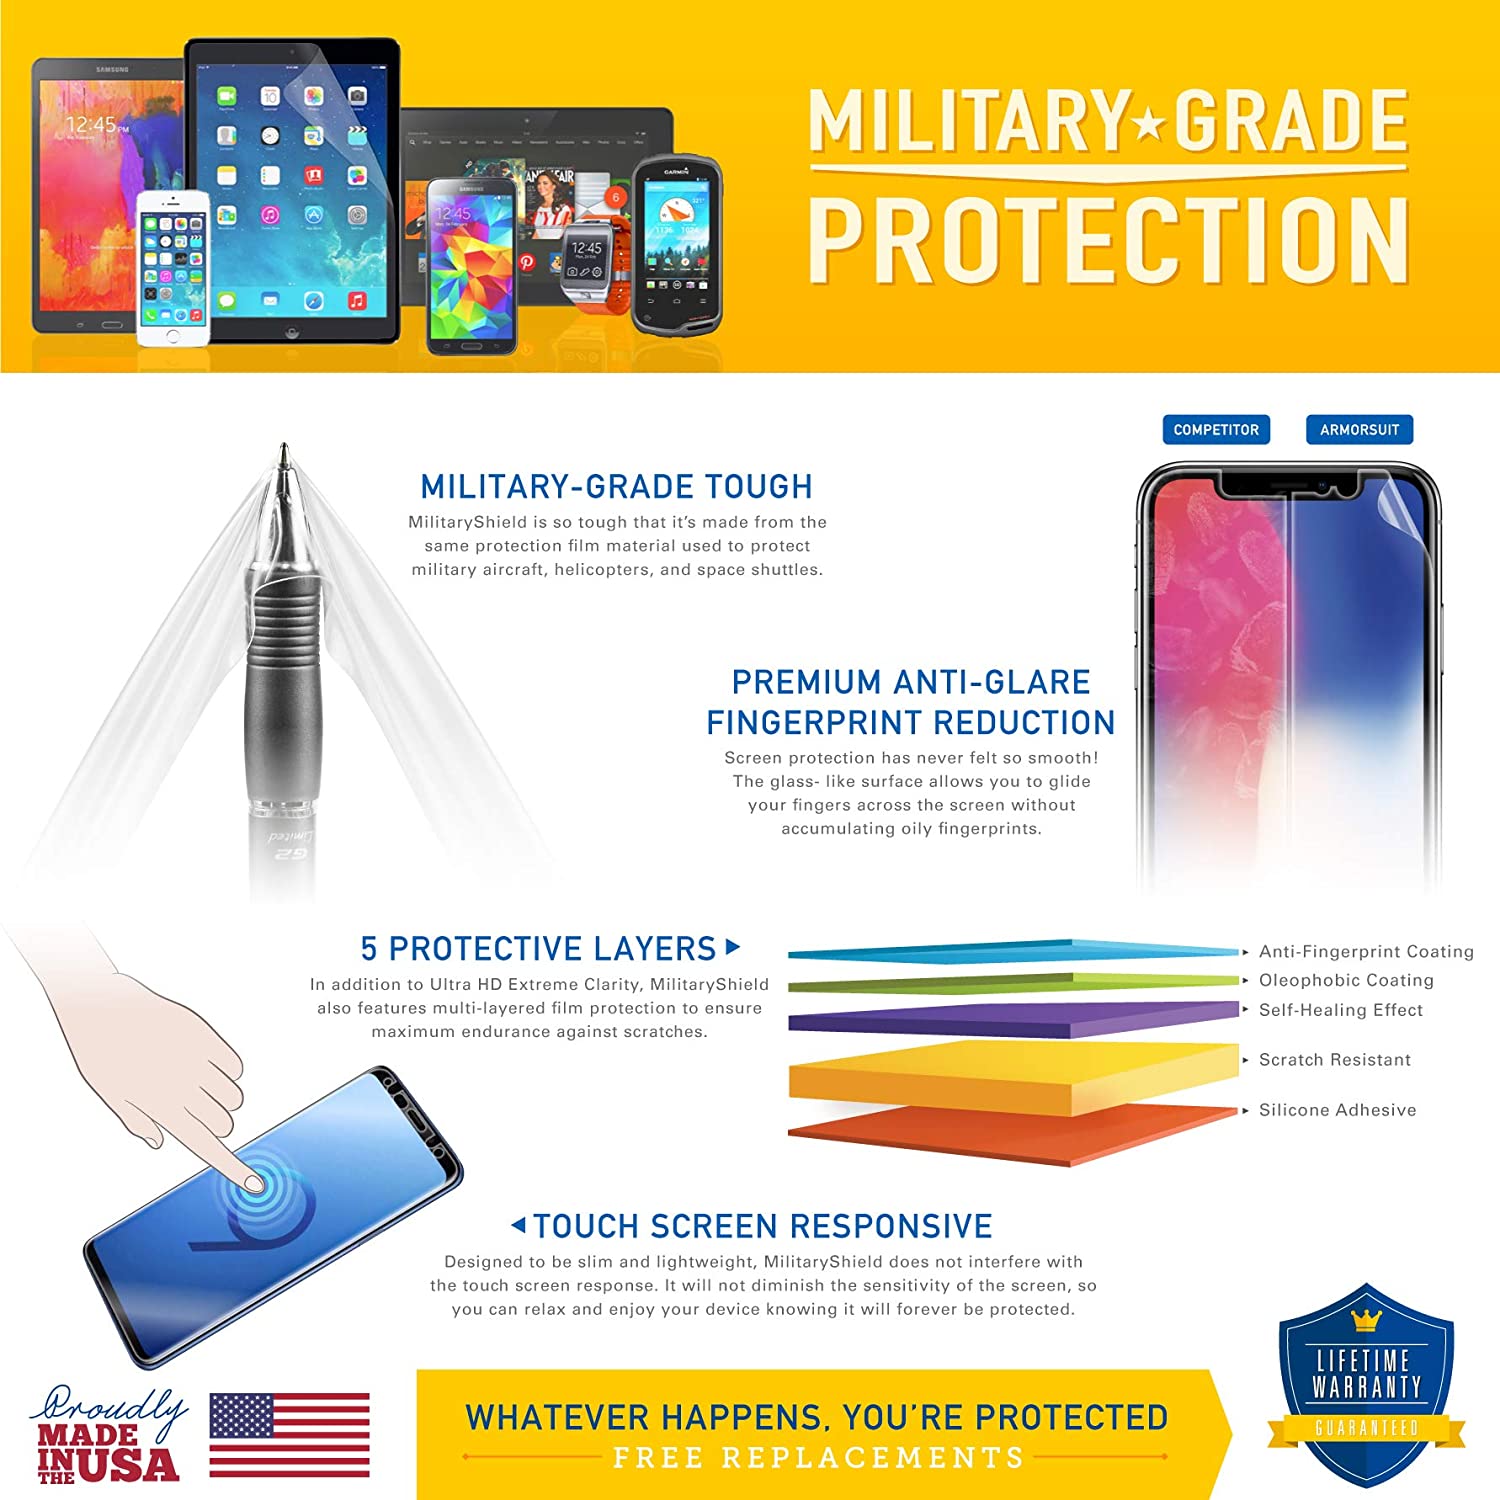 Samsung Galaxy Tab 2 10.1 Full Body Skin Protector